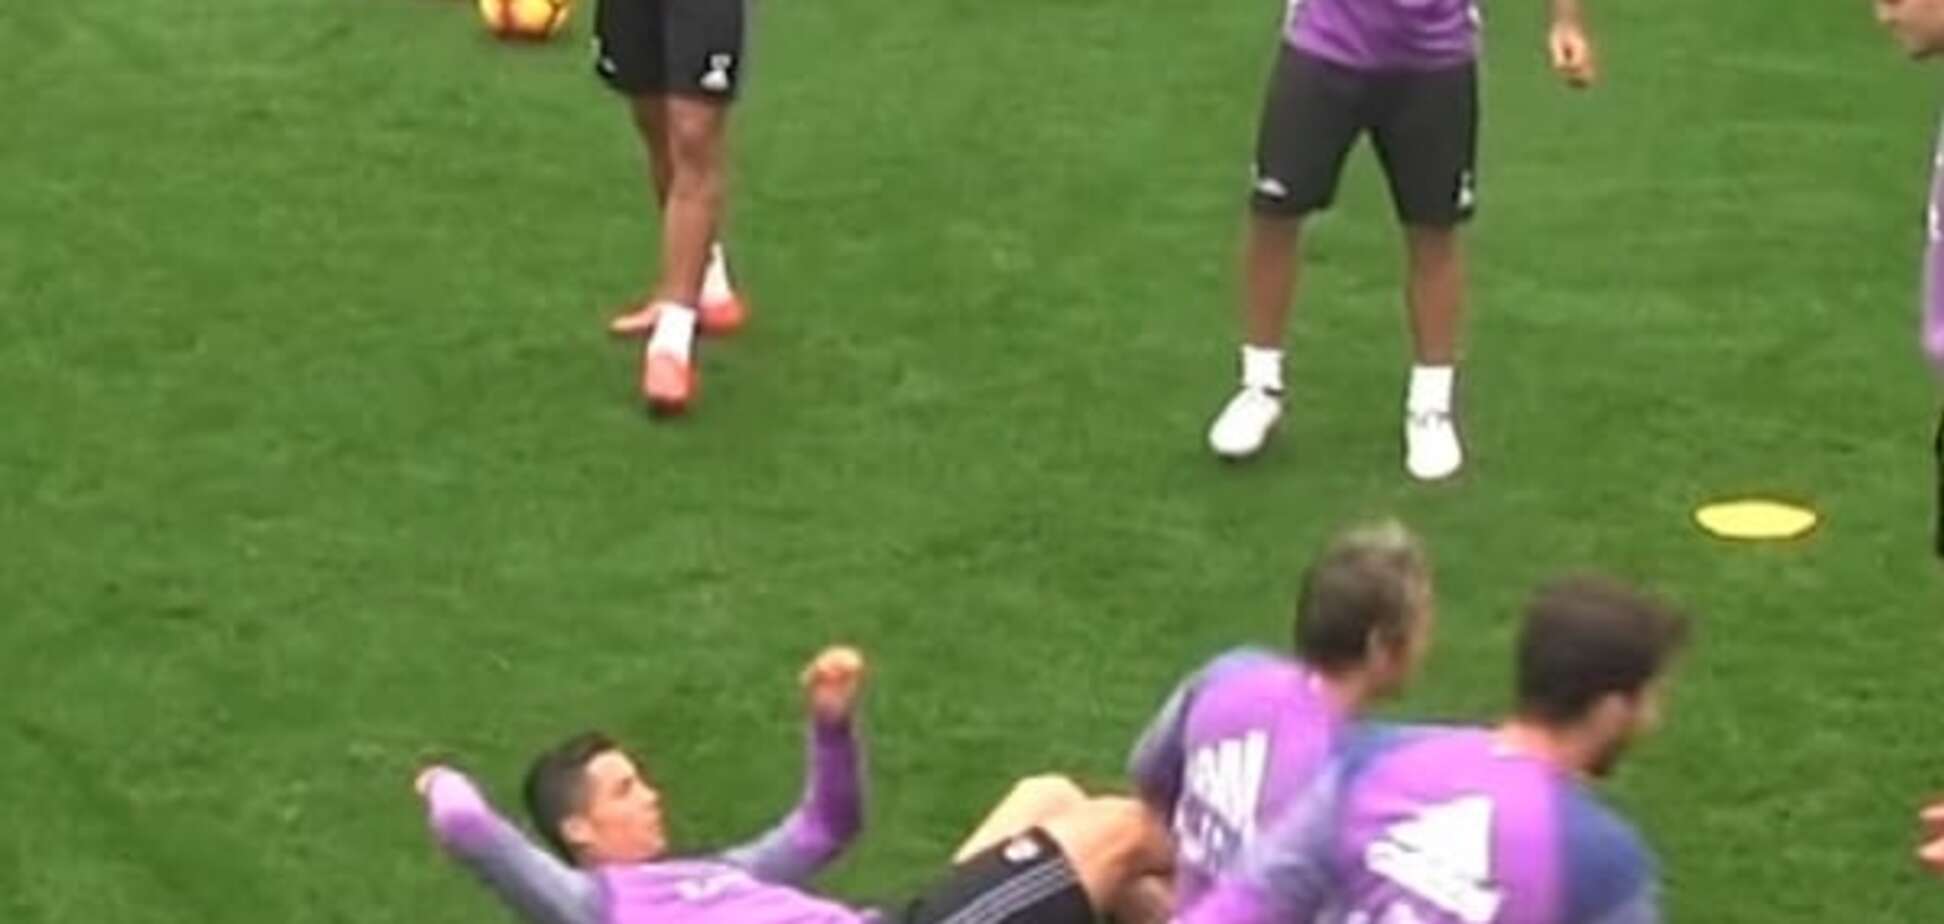 Униженный и злой: Роналду совершил подлый поступок на тренировке 'Реала' - видеофакт